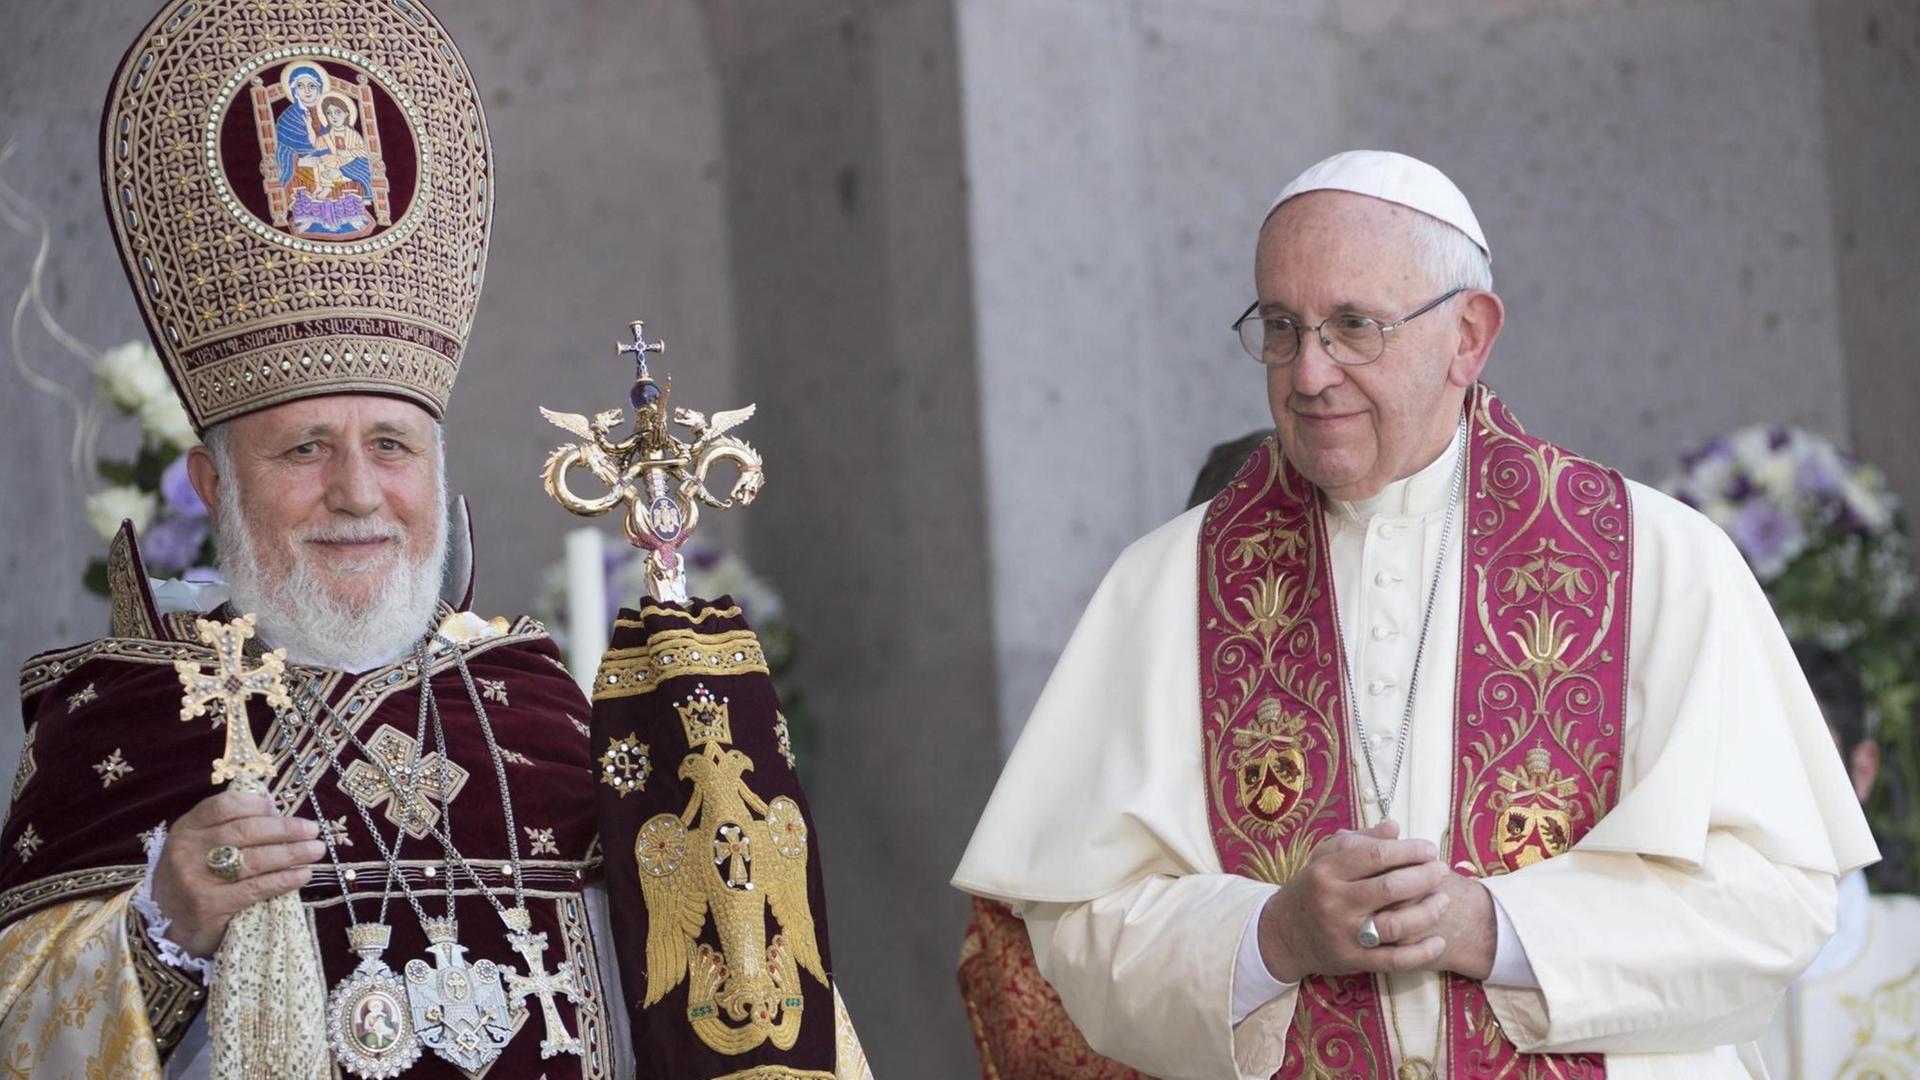 Papst Franziskus in Armenien gemeinsam mit dem Oberhaupt der Armenischen Kirche, Katholikos Karekin II.